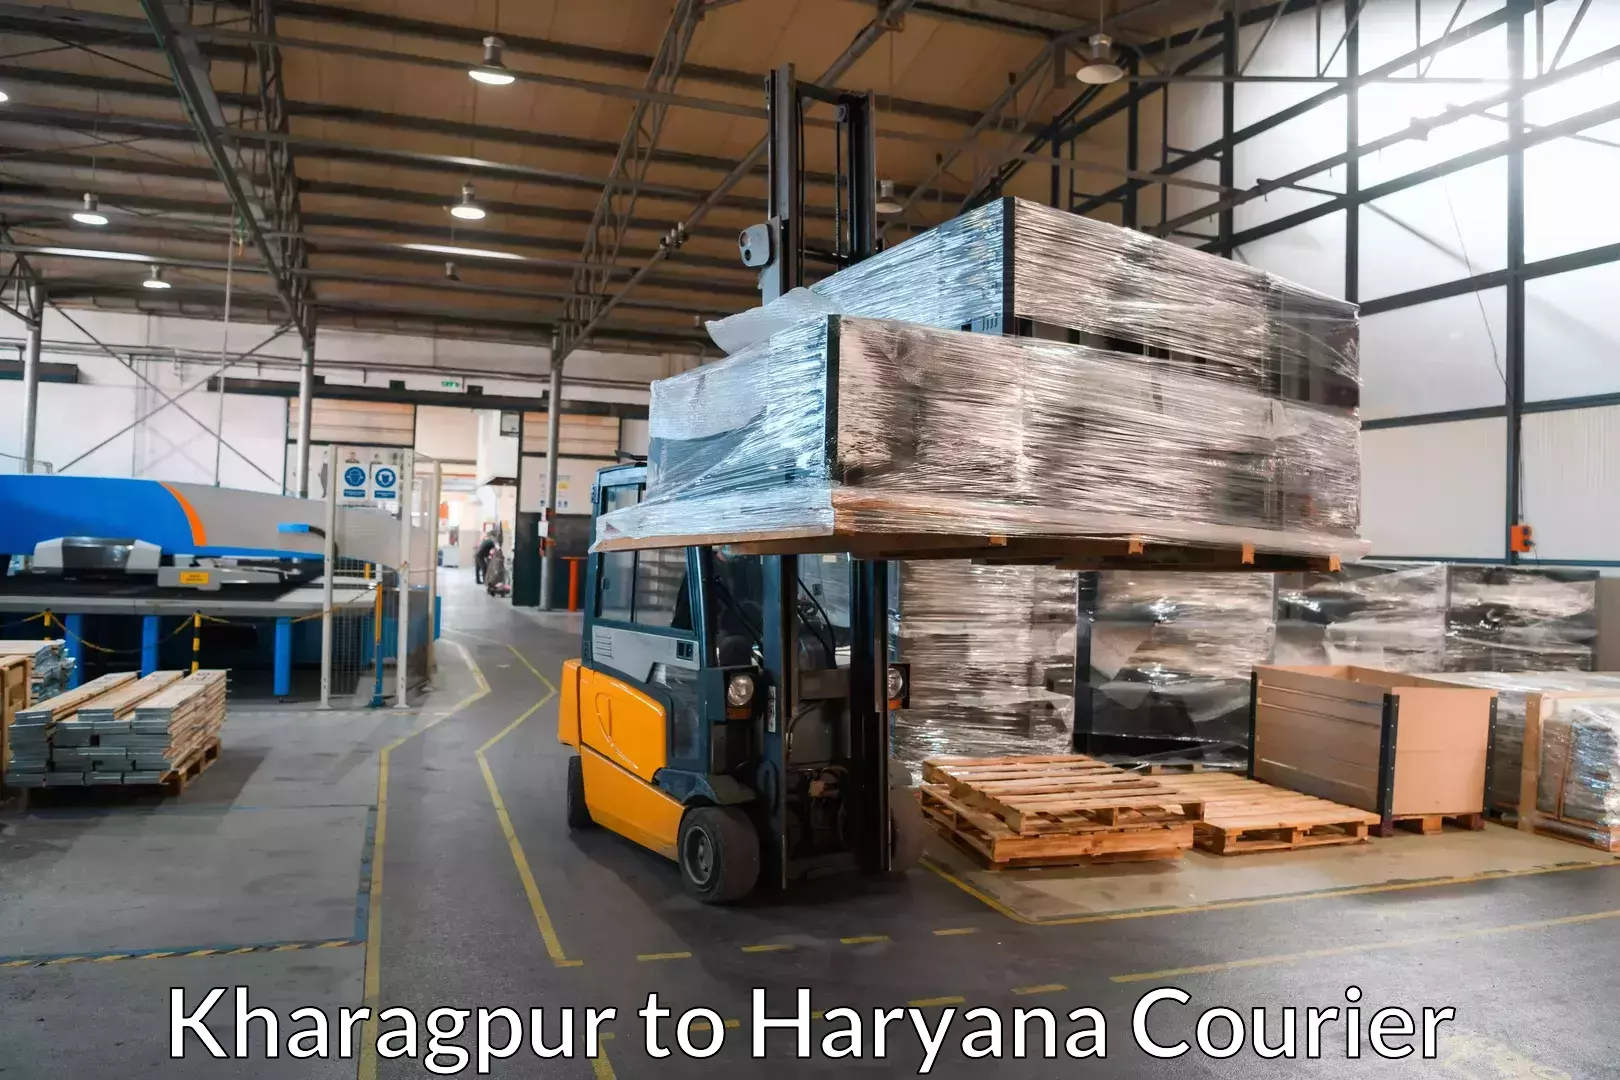 Seamless moving process Kharagpur to Haryana